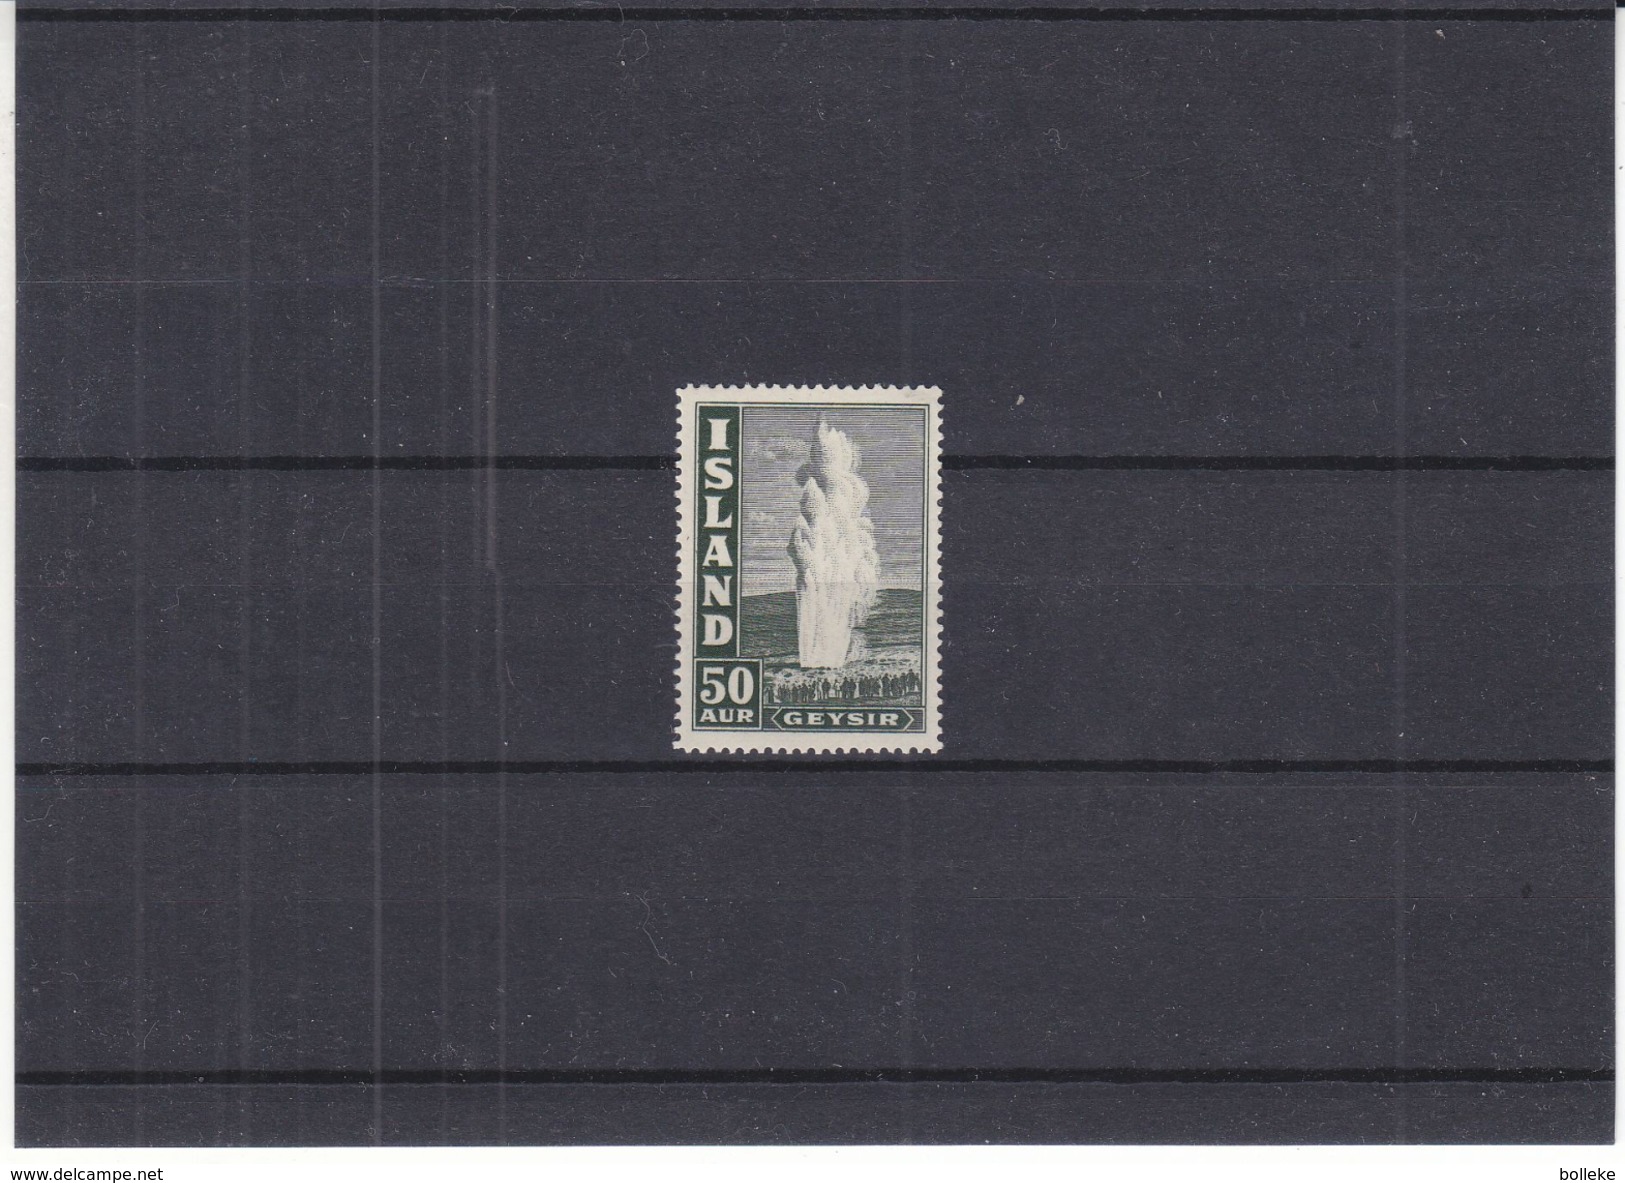 Islande - Yvert 180 ** - MNH - Geysir - Valeur 45 Euros - Unused Stamps